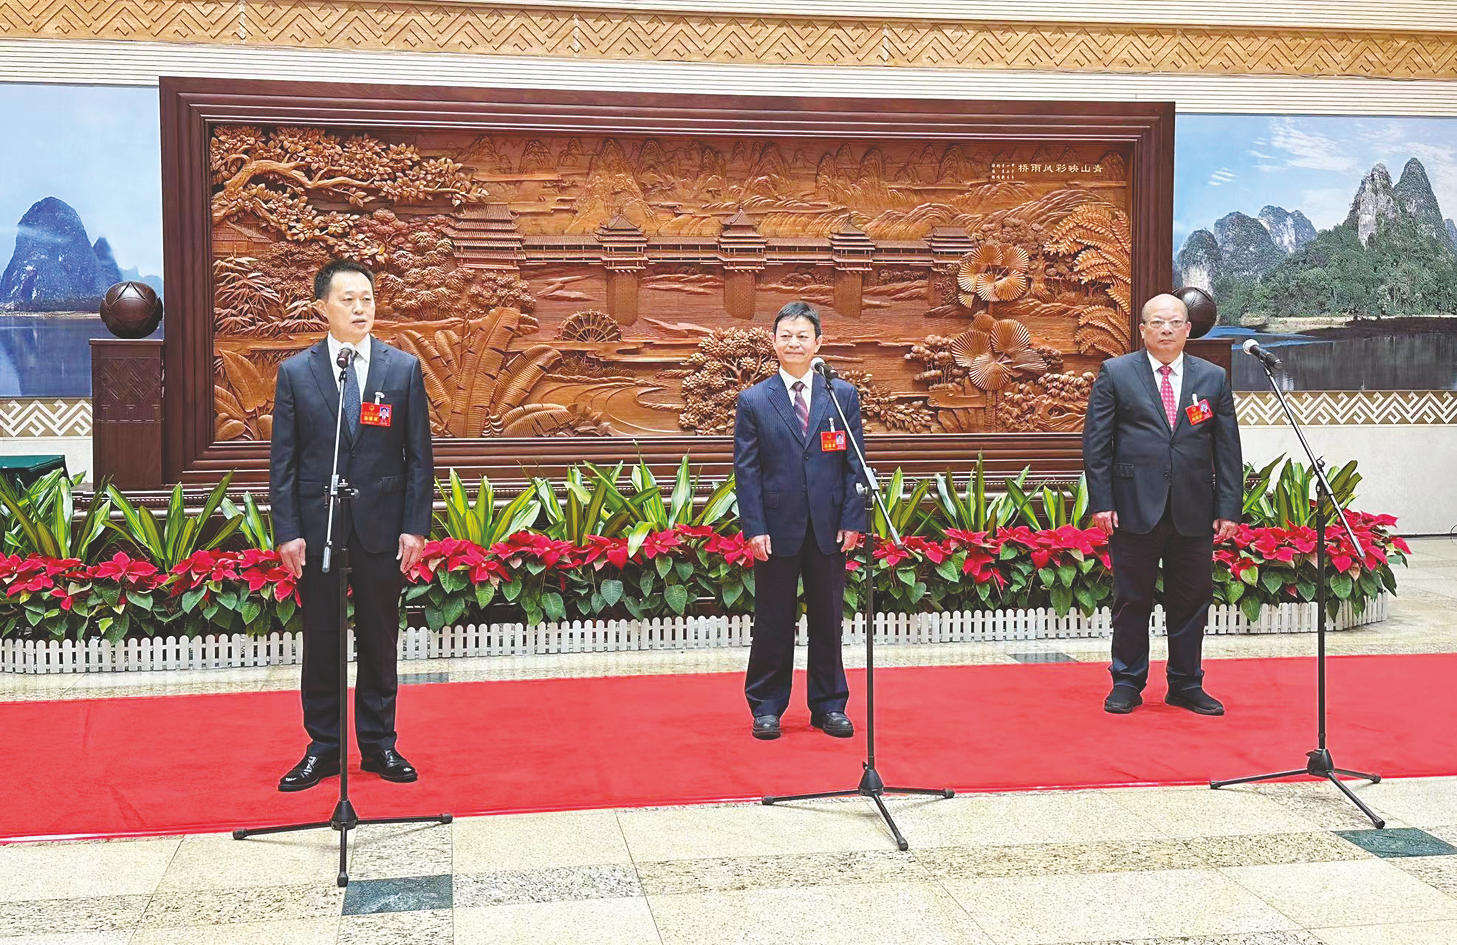     杨斌、王劼耘、姚佐平代表（从左至右）接受媒体记者采访    本报记者 彭媛媛 摄